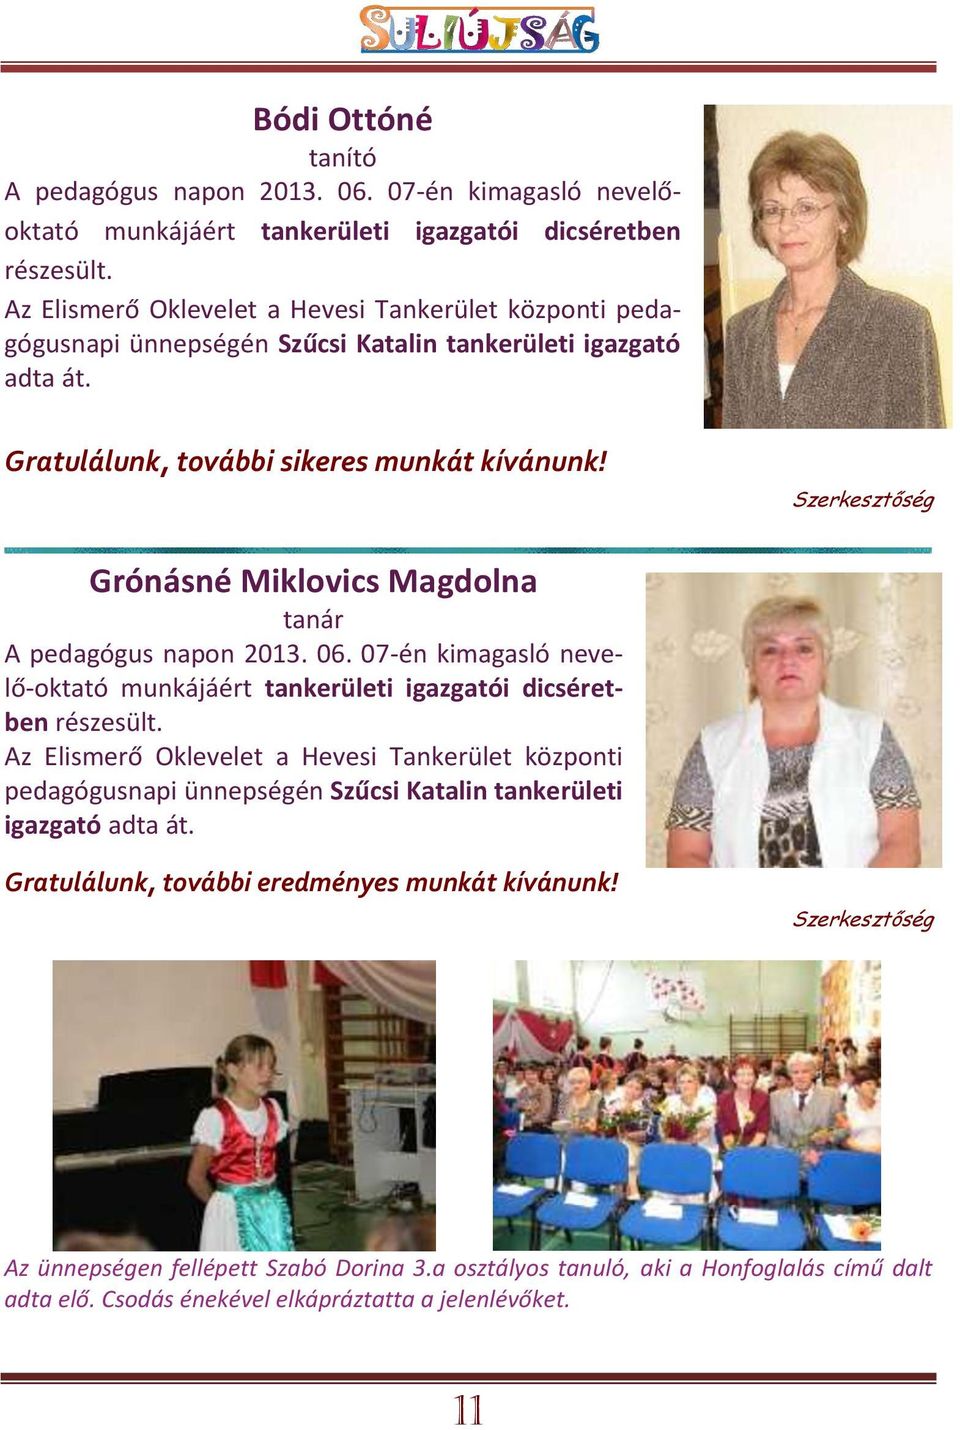 Szerkesztőség Grónásné Miklovics Magdolna tanár A pedagógus napon 2013. 06. 07-én kimagasló nevelő-oktató munkájáért tankerületi igazgatói dicséretben részesült.